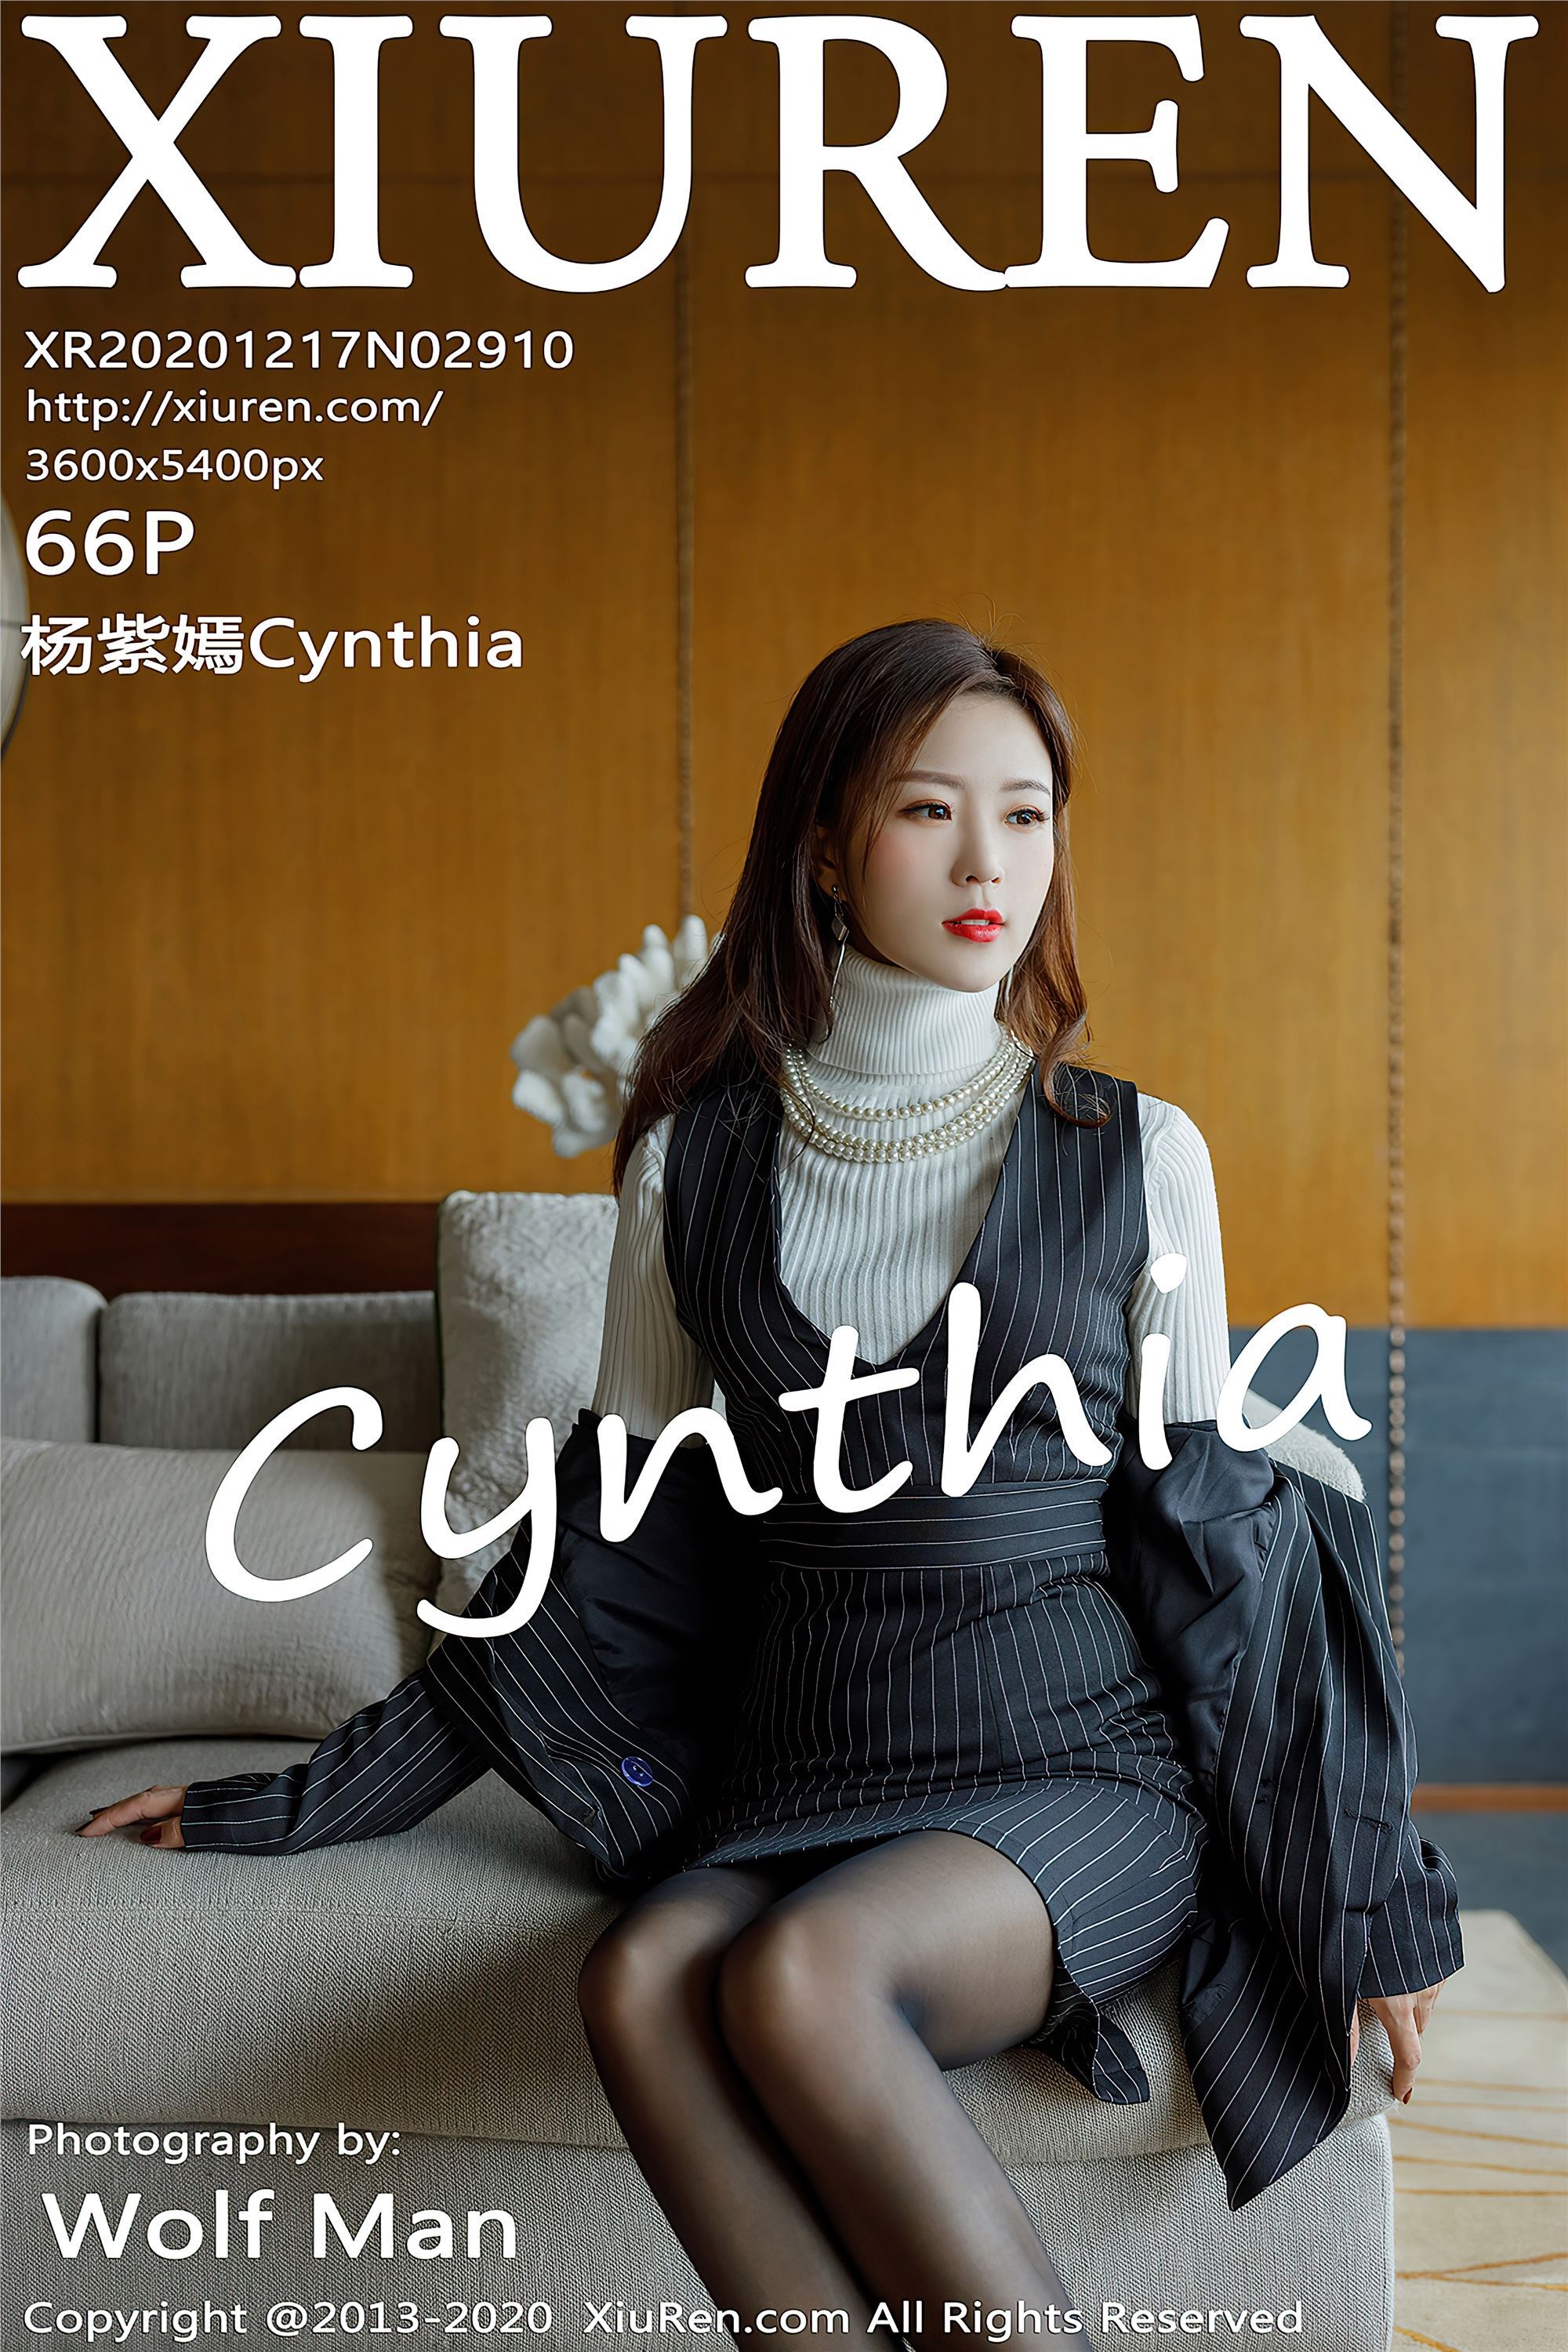 Xiuren 2020.12.17 no.2910 Yang Ziyan Cynthia